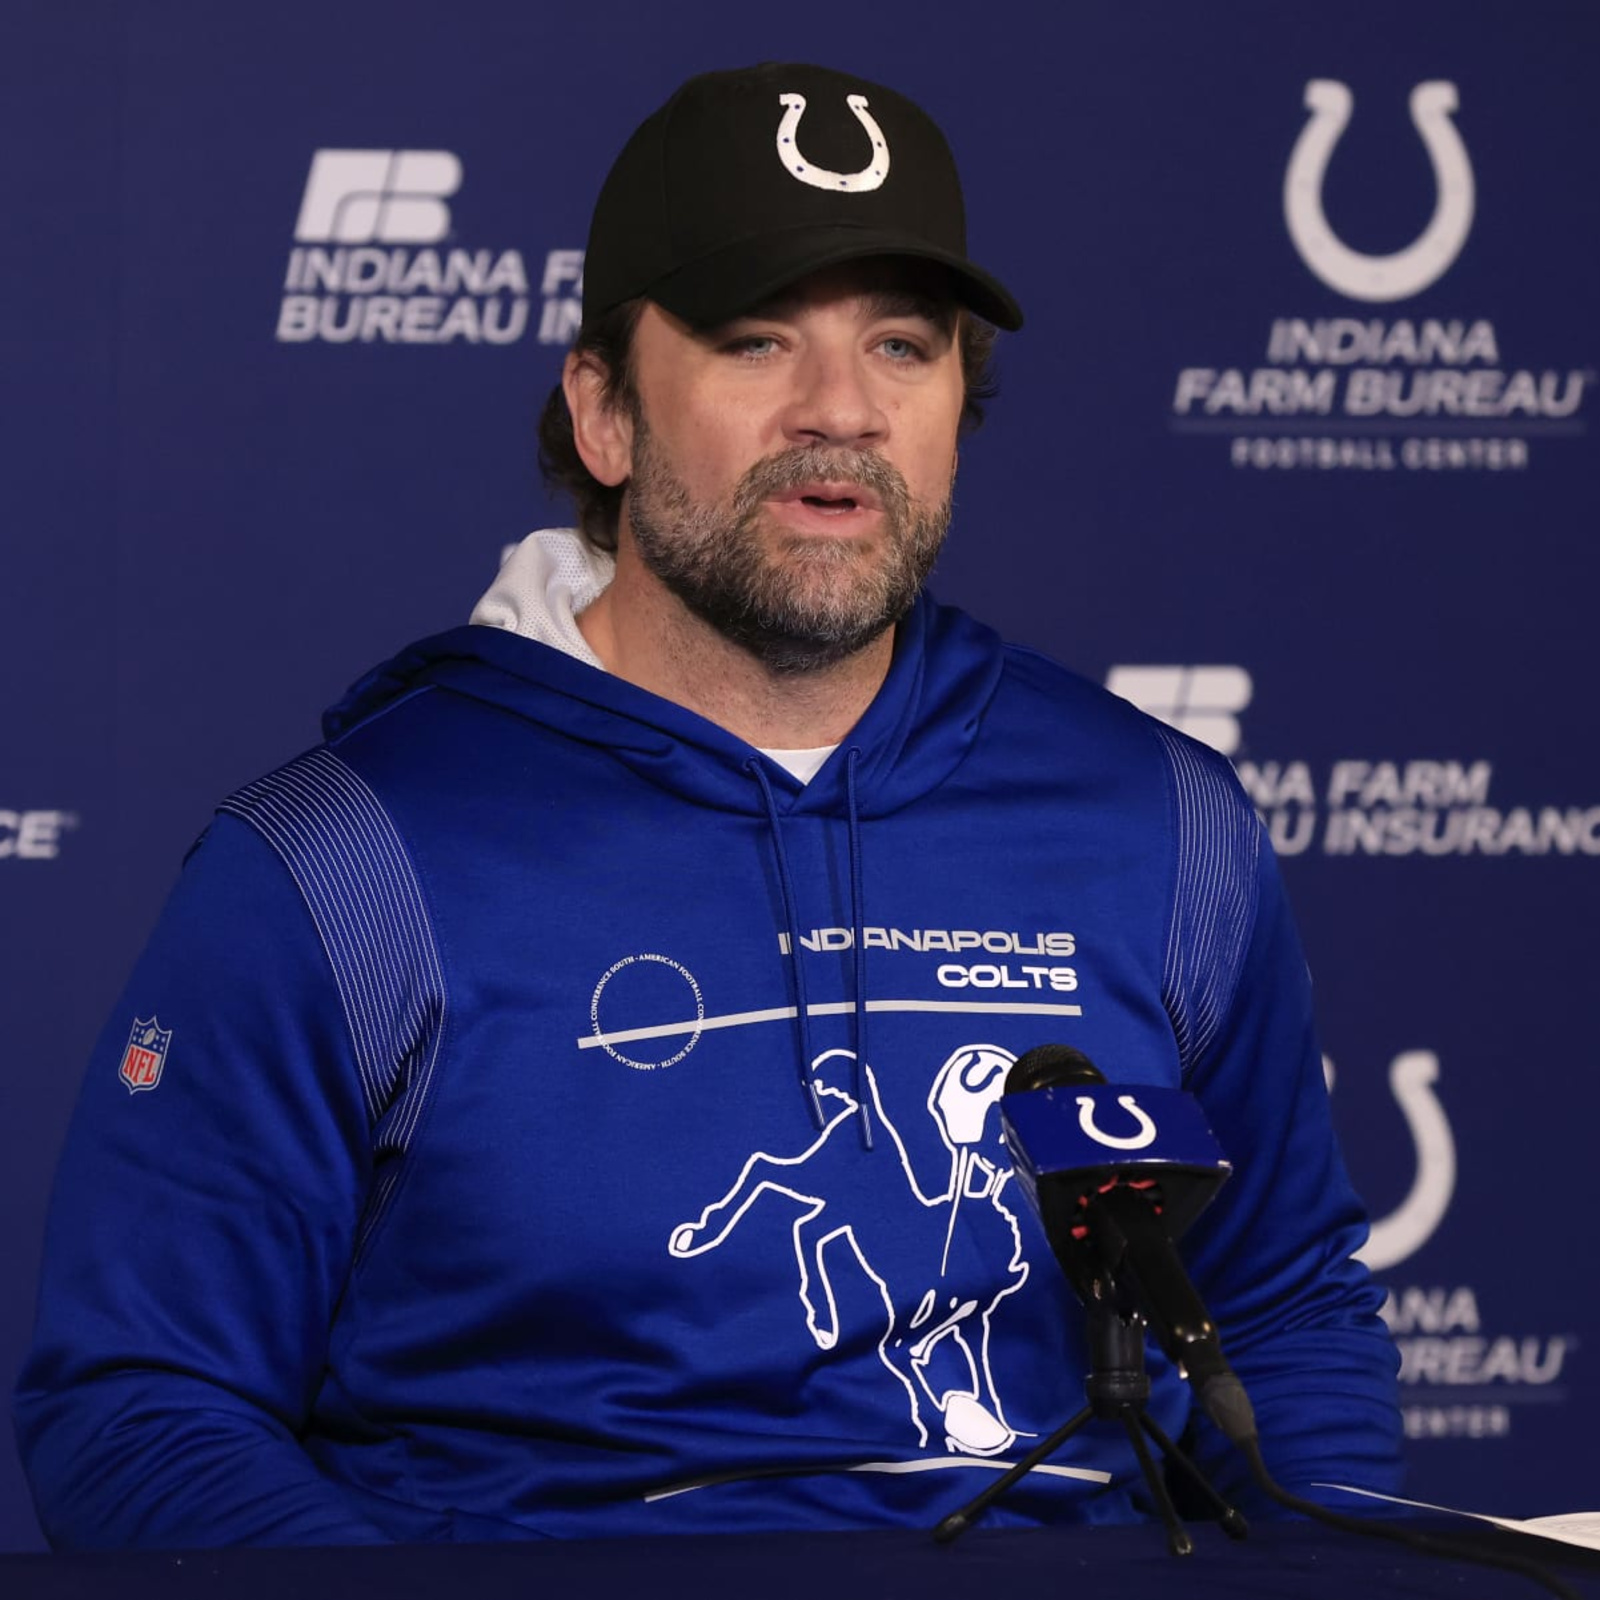 Colts hire Eagles' Shane Steichen as head coach after Super Bowl